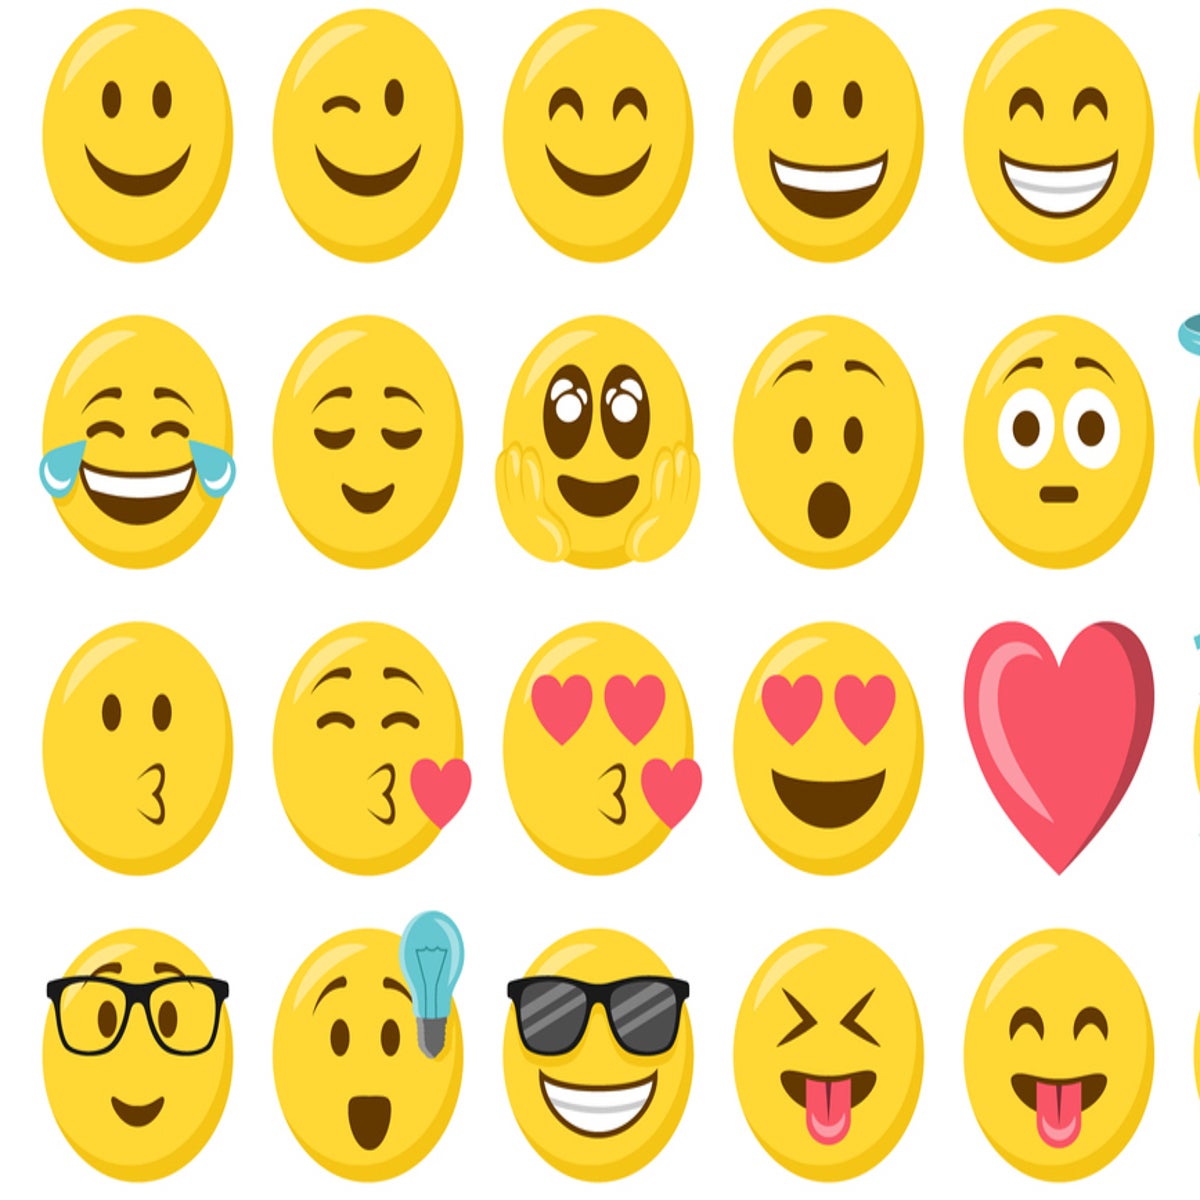 emoji meanings